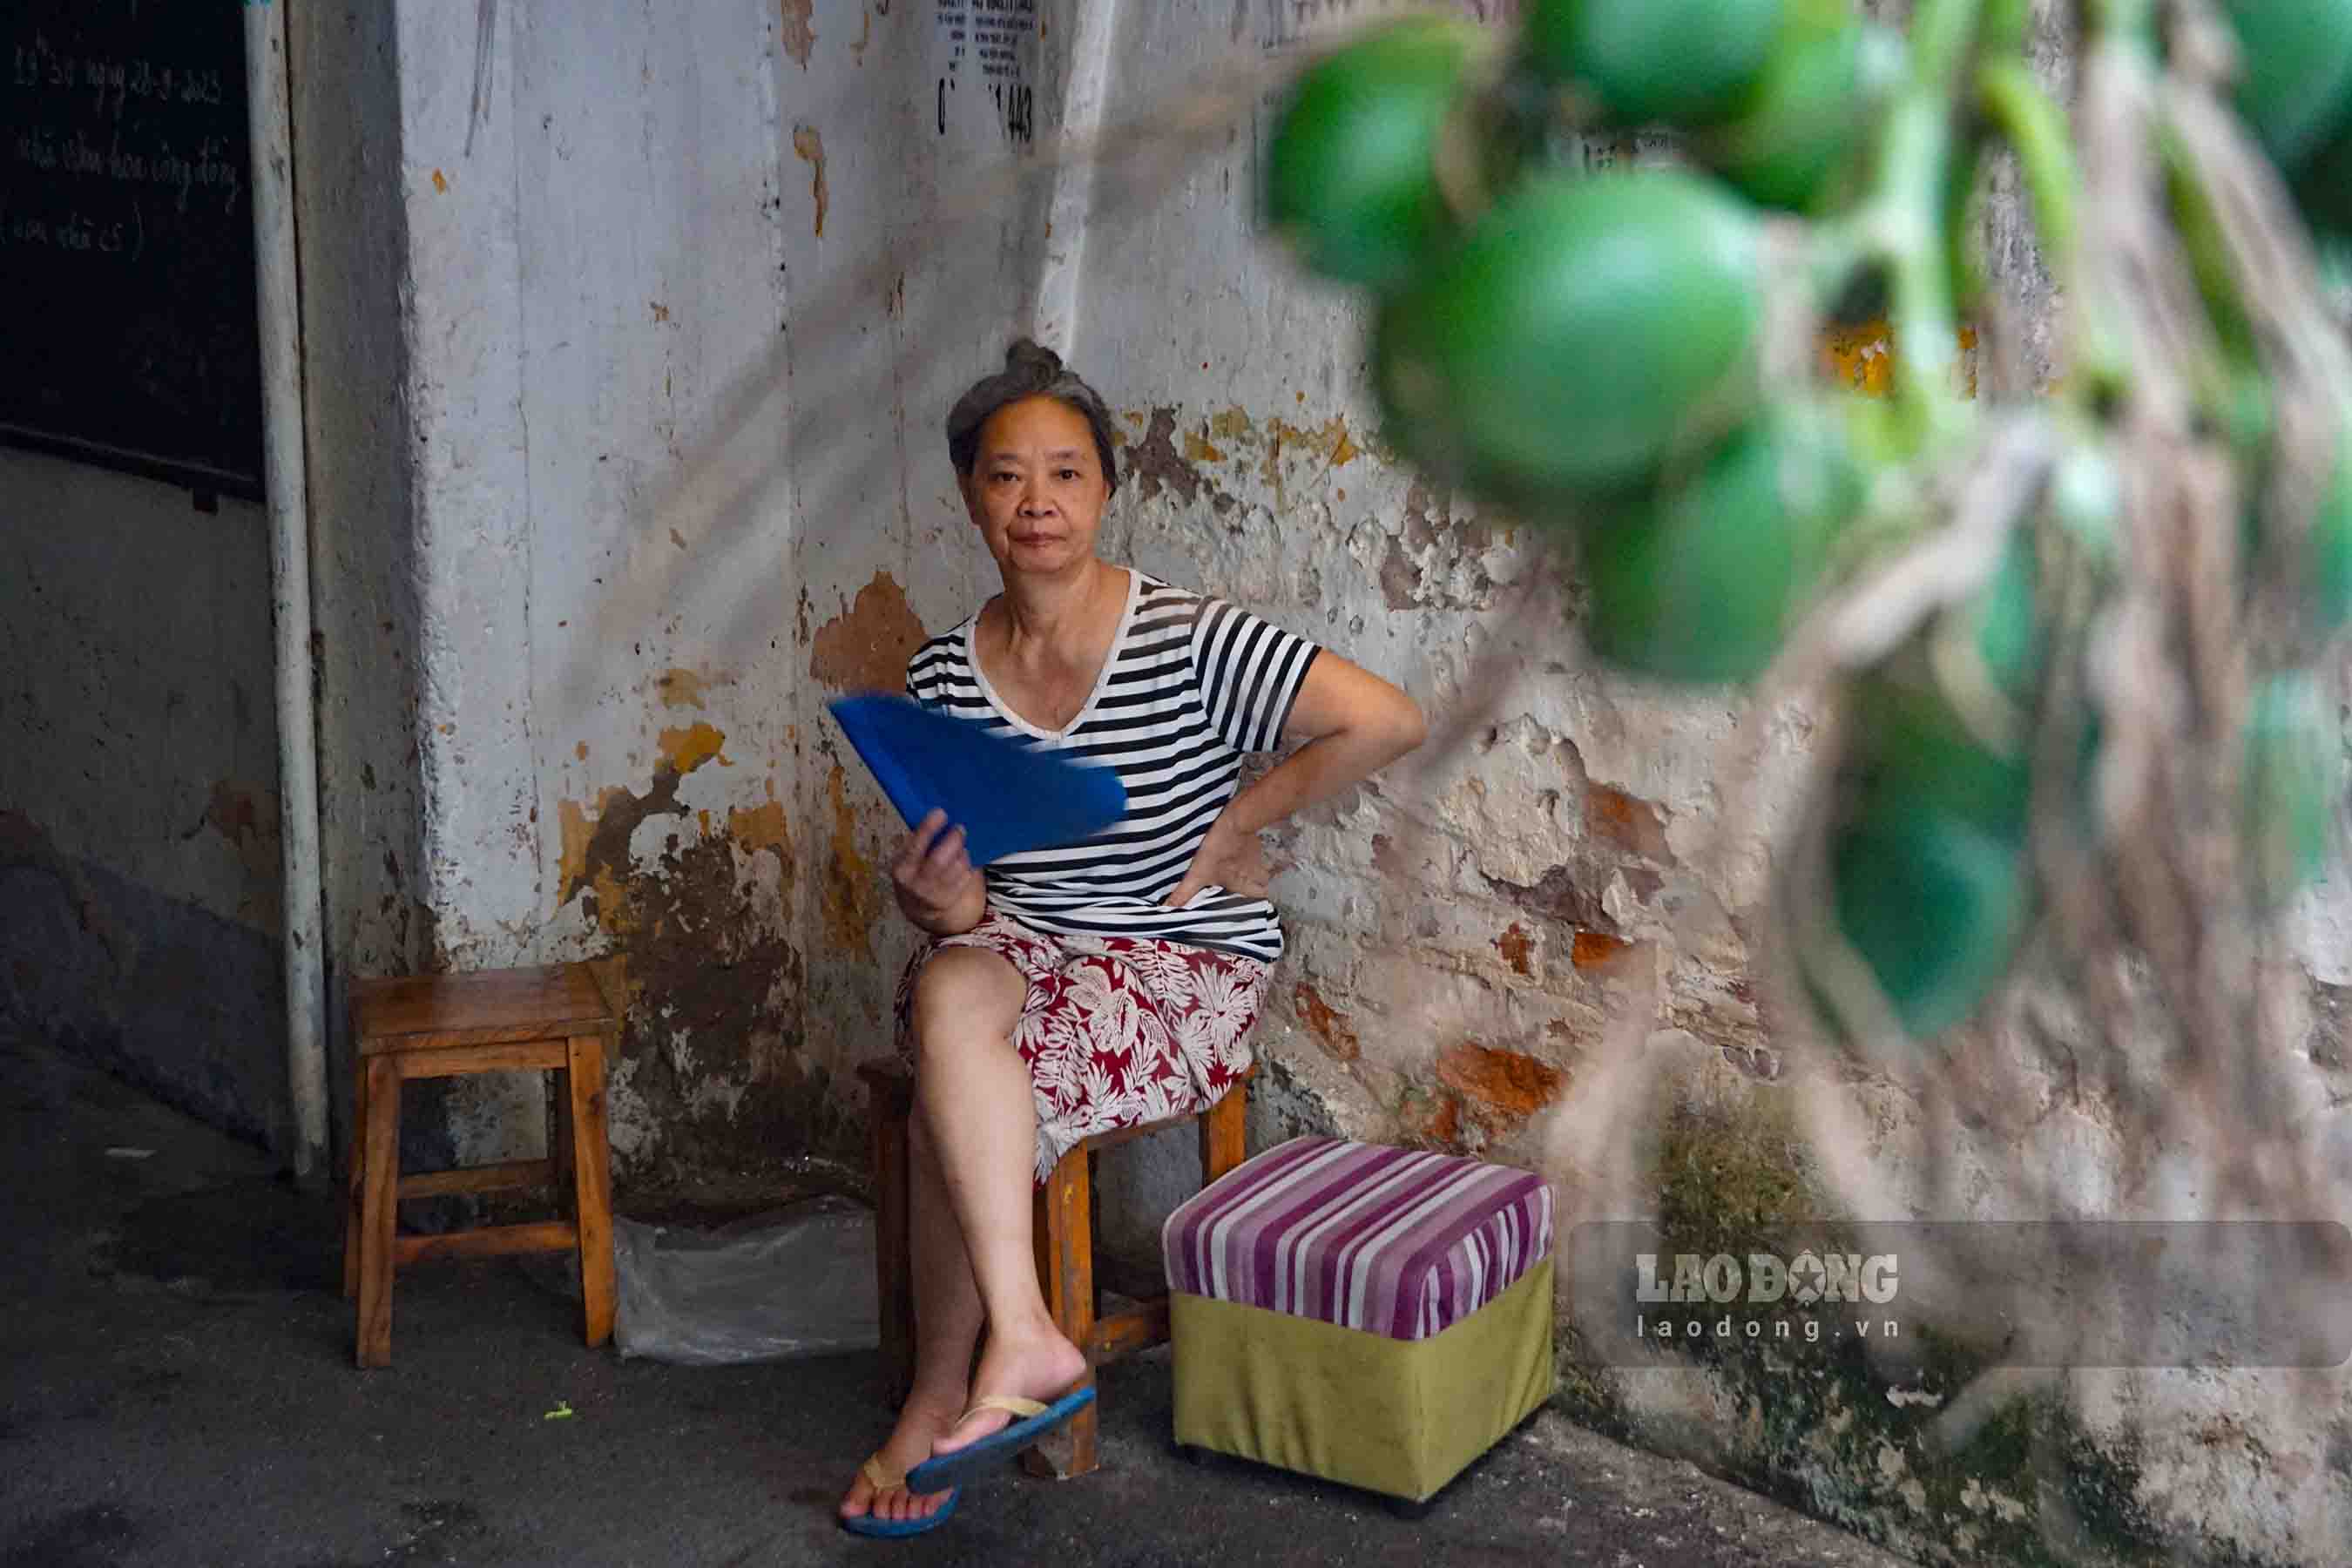 Trao đổi với PV, bà Nguyễn Thị Hương (cư dân sinh sống trên tòa C5) chia sẻ: “Vào mùa mưa ở đây thường xuyên bị dột. Cảnh sống ở nhà tập thể chuyện nước mưa ngấm sang nhà nhau là bình thường”.